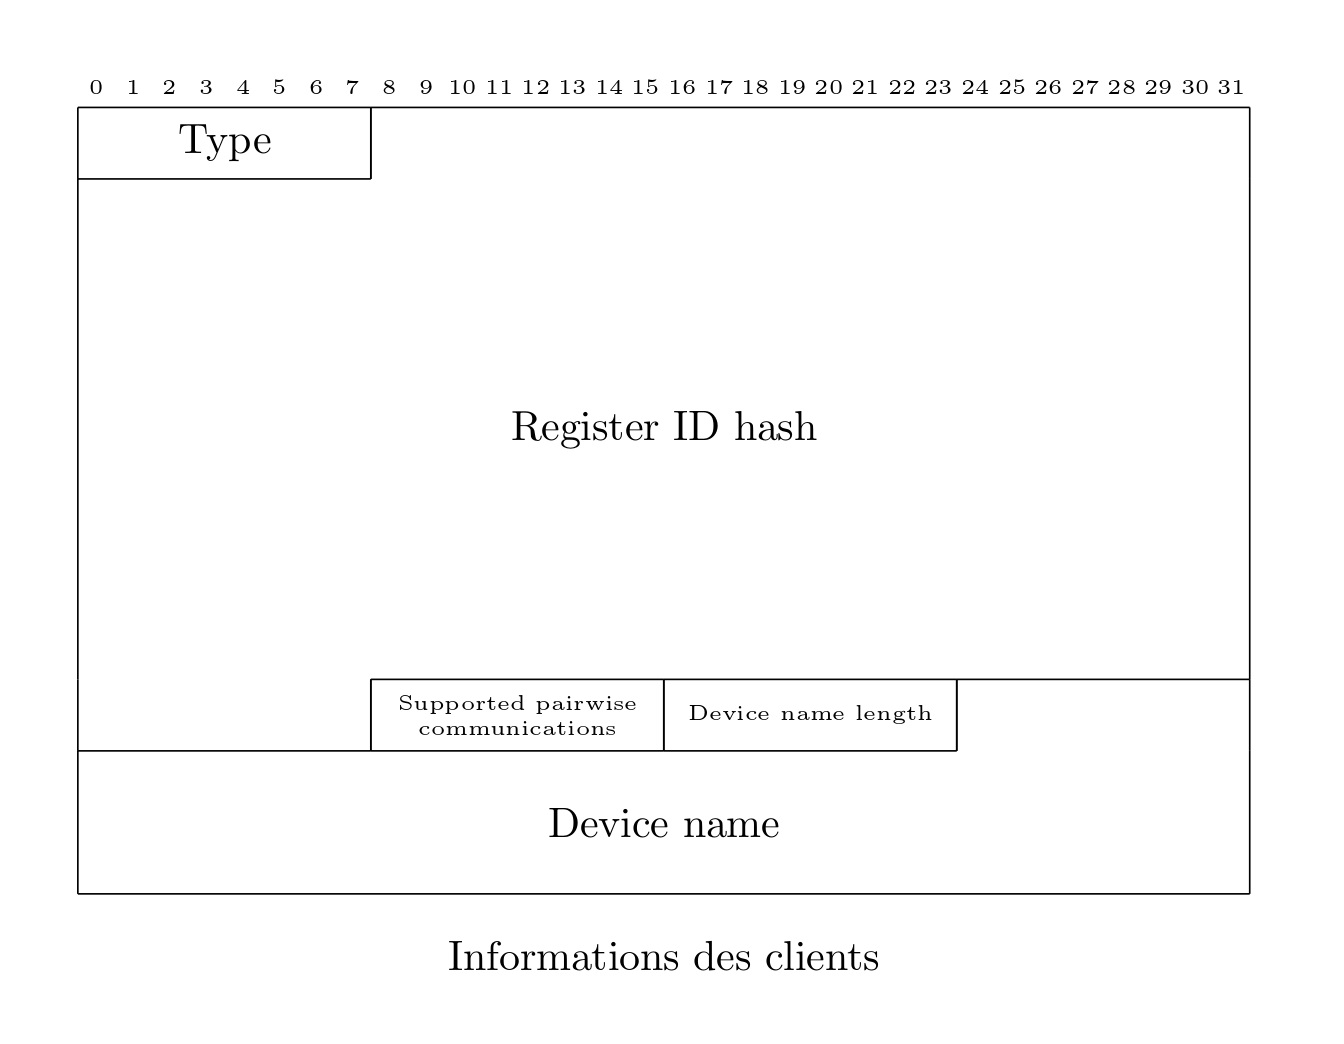 client information datagram